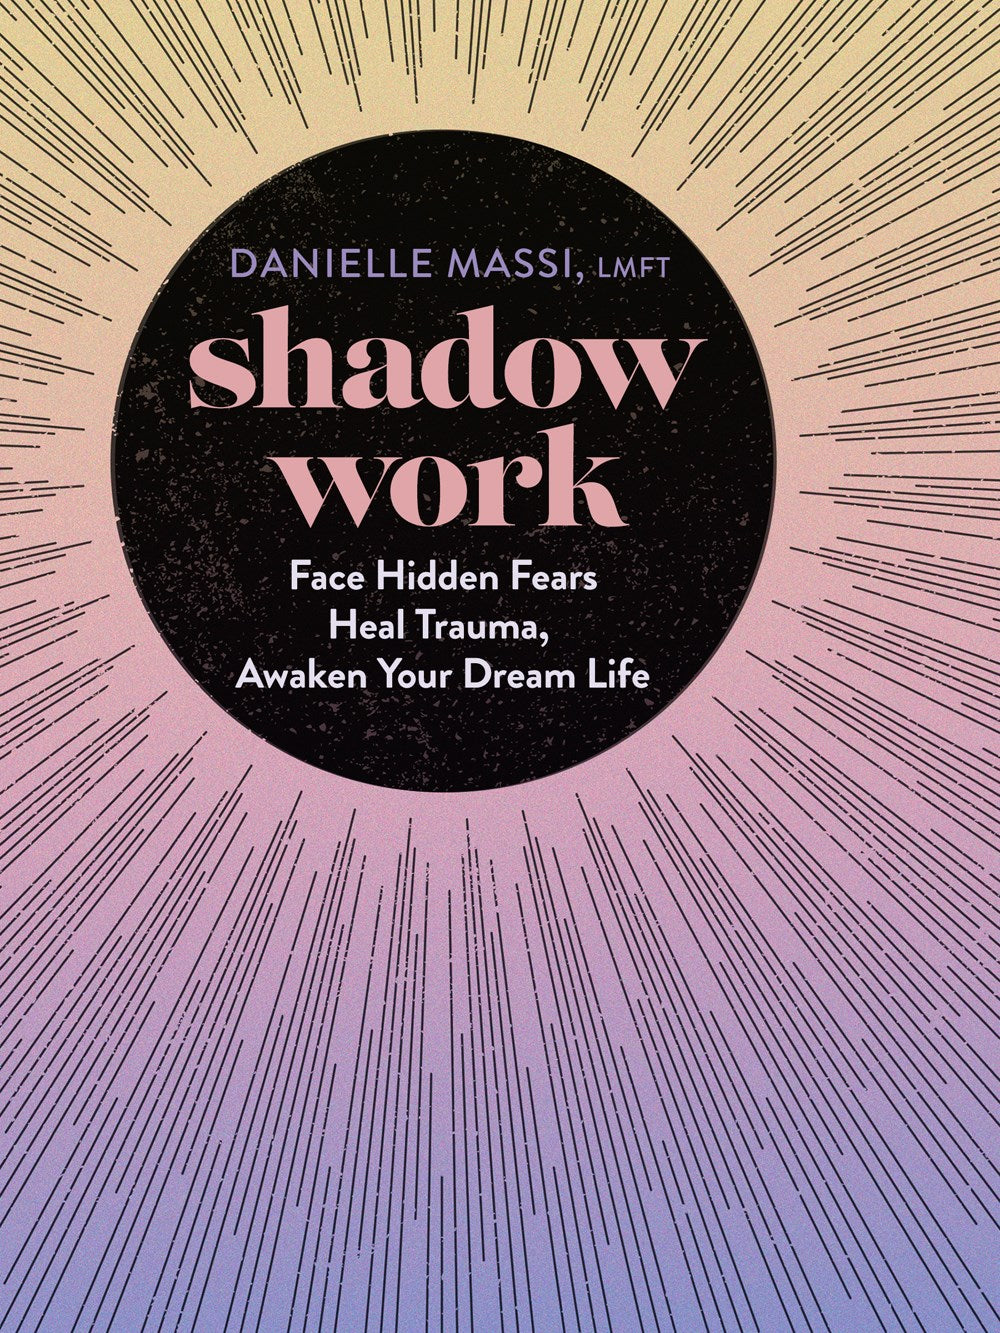 Shadow Work by Danielle Massi - Lighten Up Shop